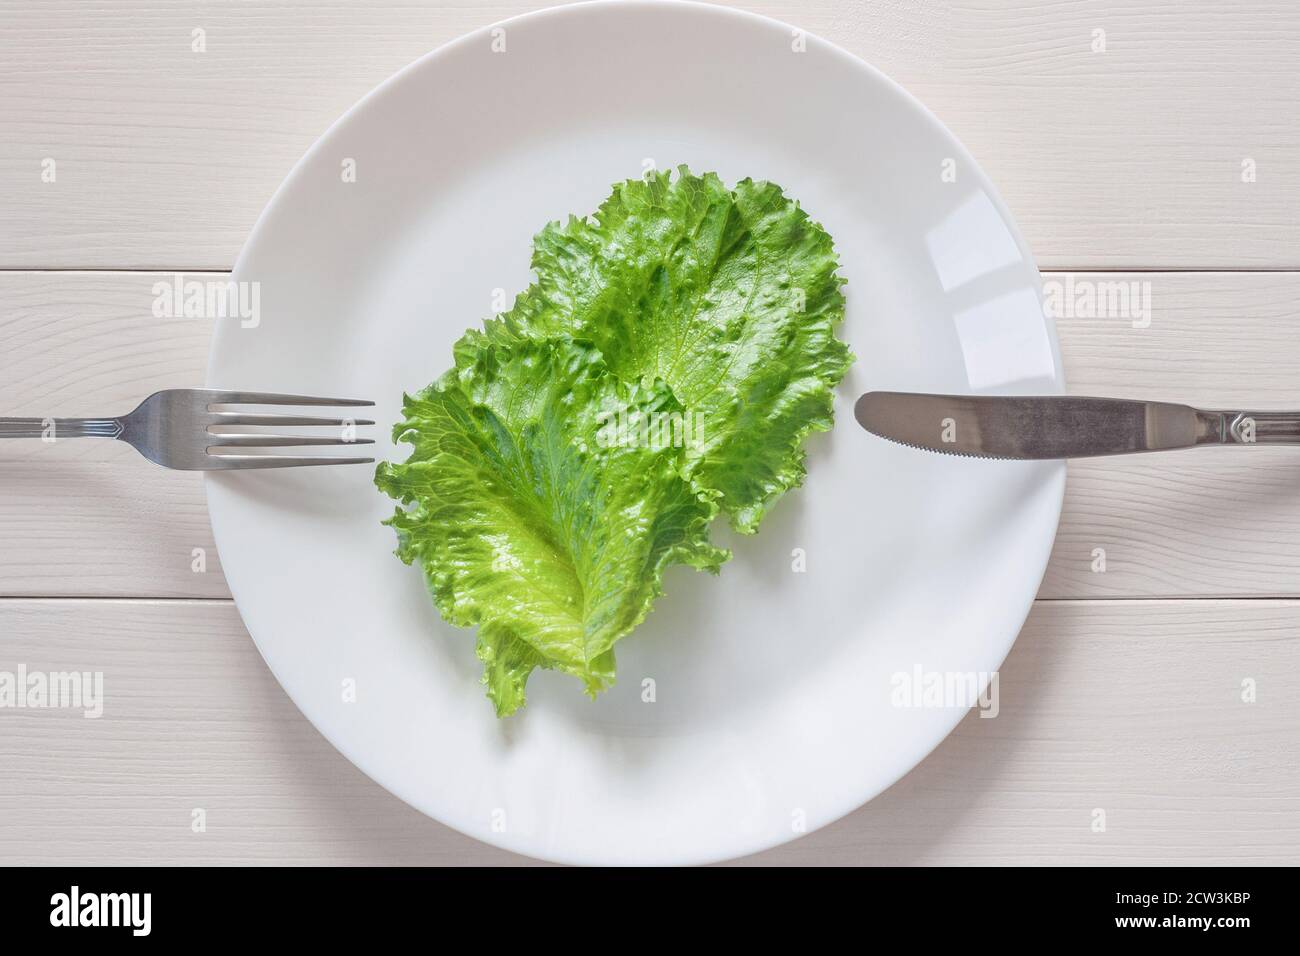 Monotrophe Ernährung - zwei Blätter Salat auf dem Teller, Gabel und Messer, Holzhintergrund Stockfoto